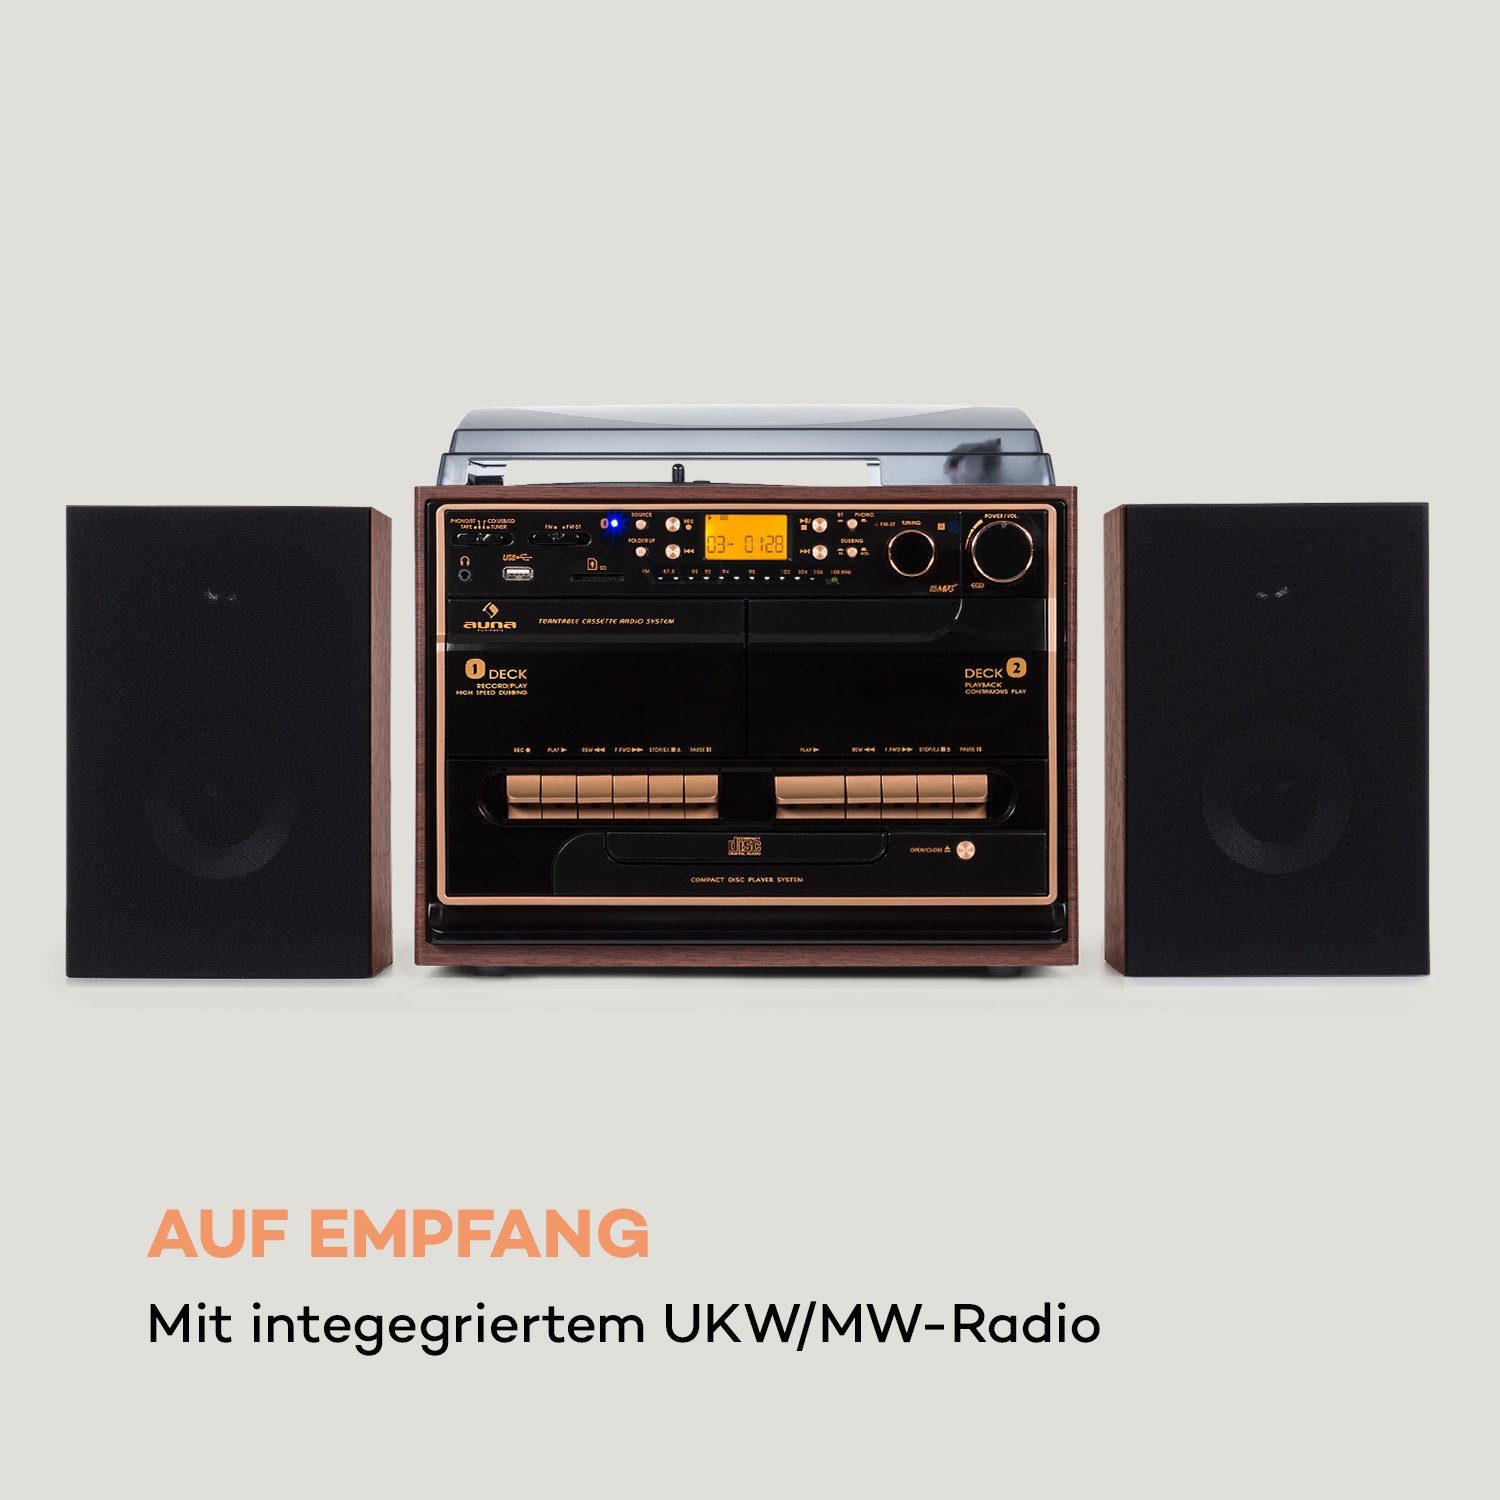 Wood 388-BT (UKW/MW-Radio, Stereoanlage Auna 10 W)